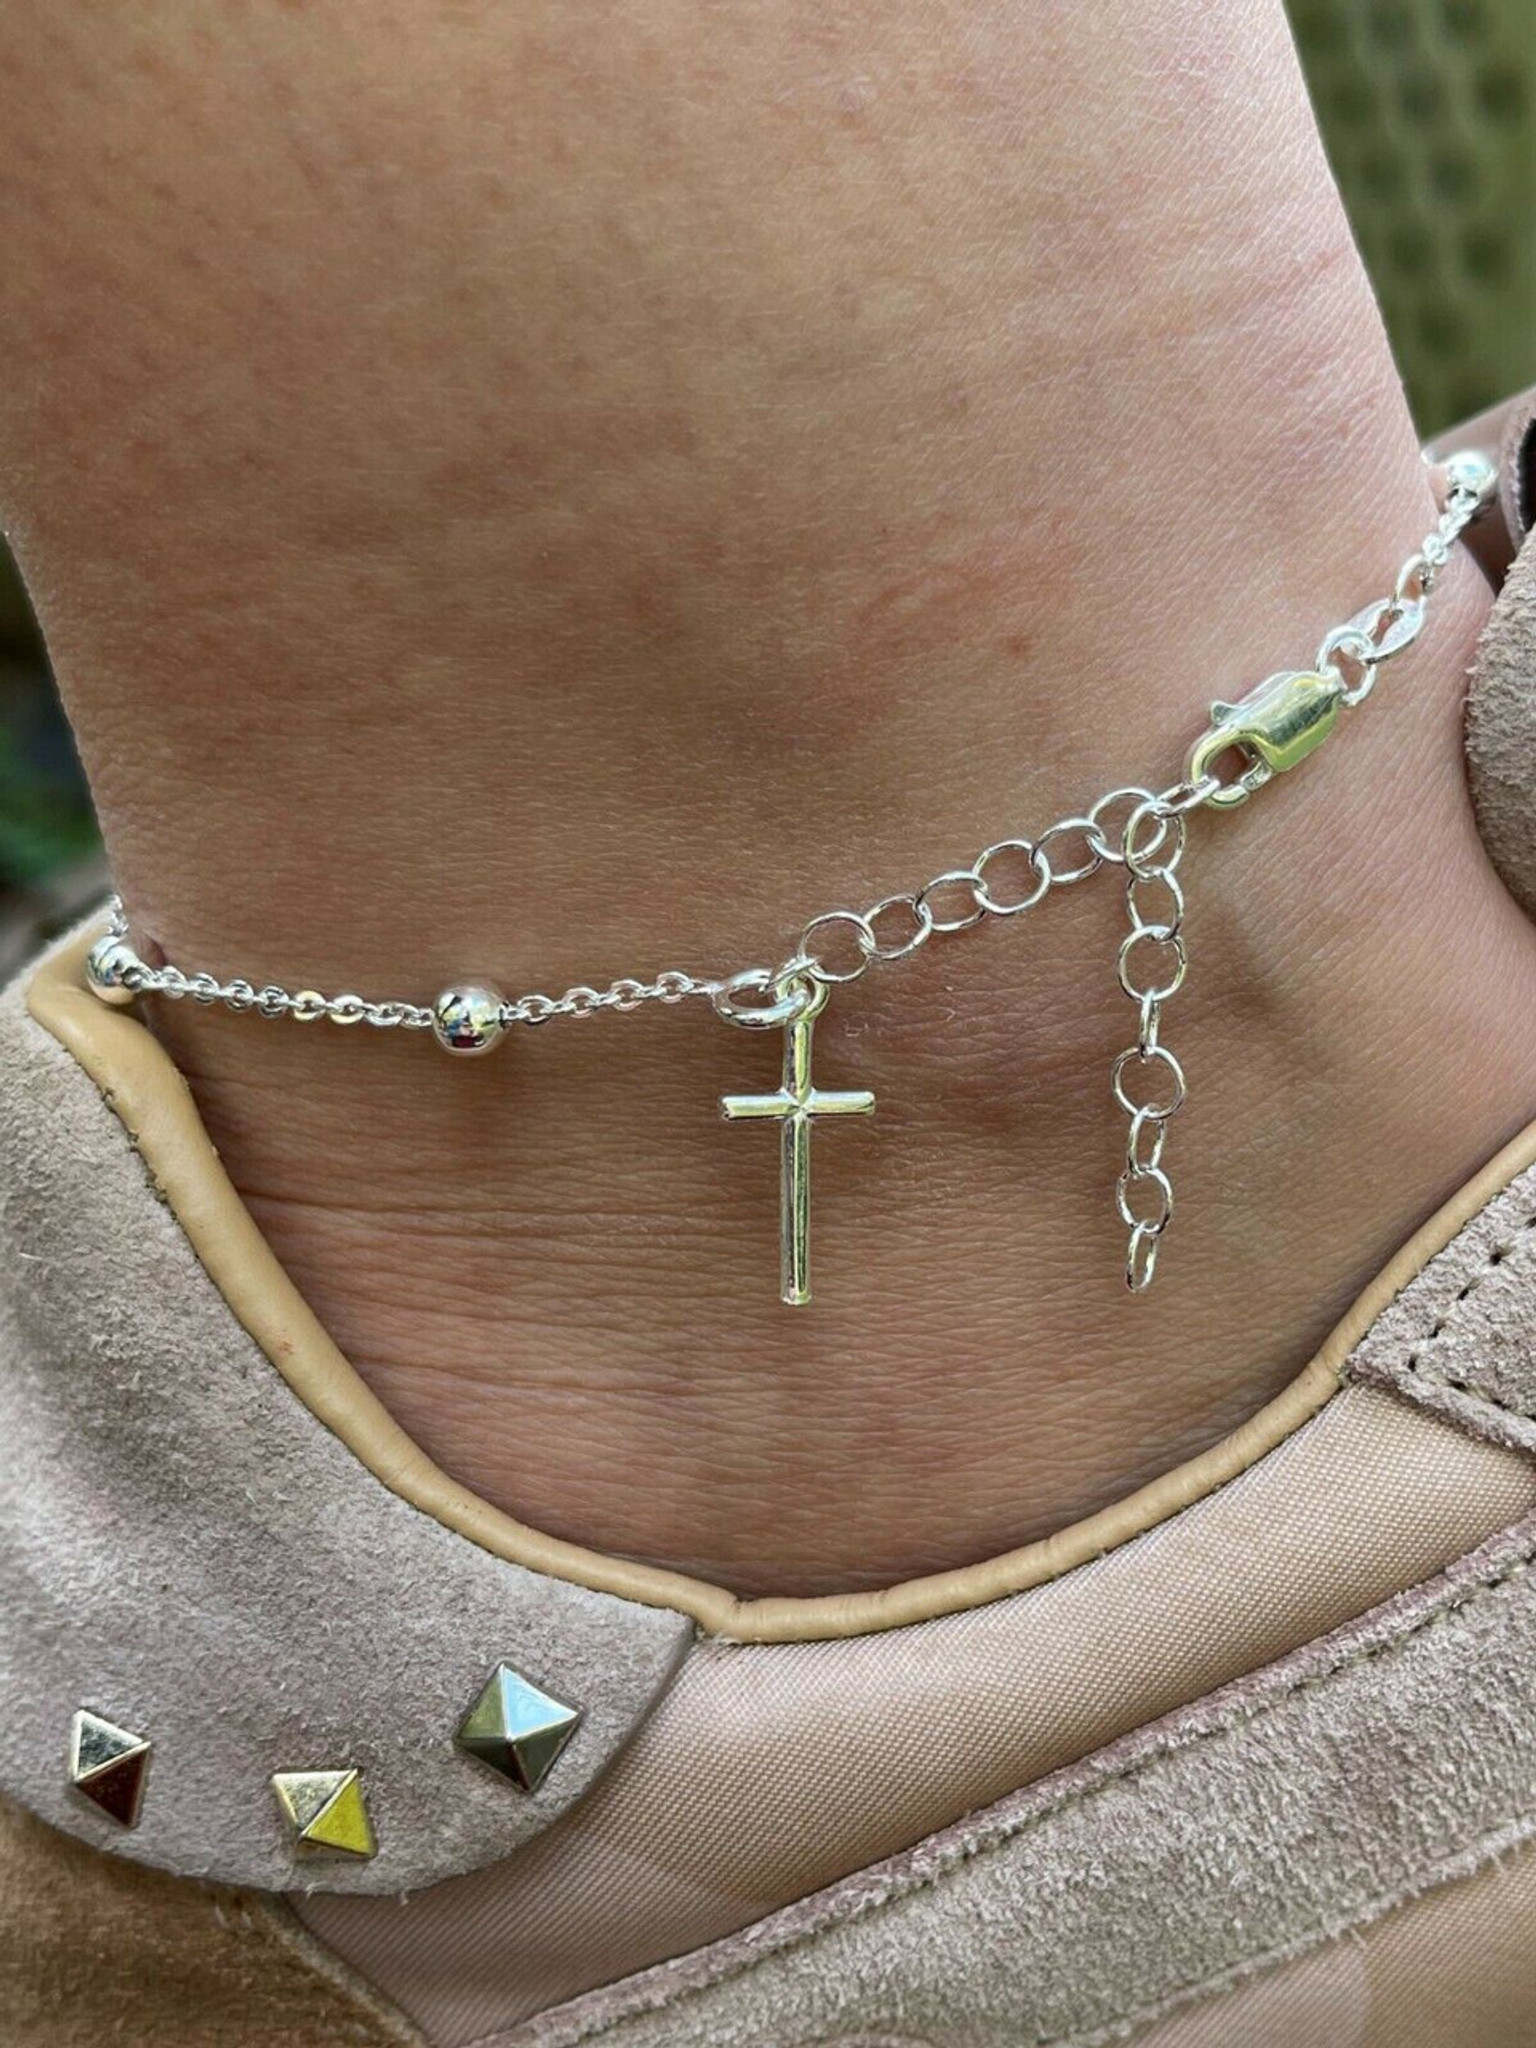 Ankle Bracelet Rosary Cross Beads Anklet 925 Sterling Silver Adjustable  8-11.5 - HarlemBling